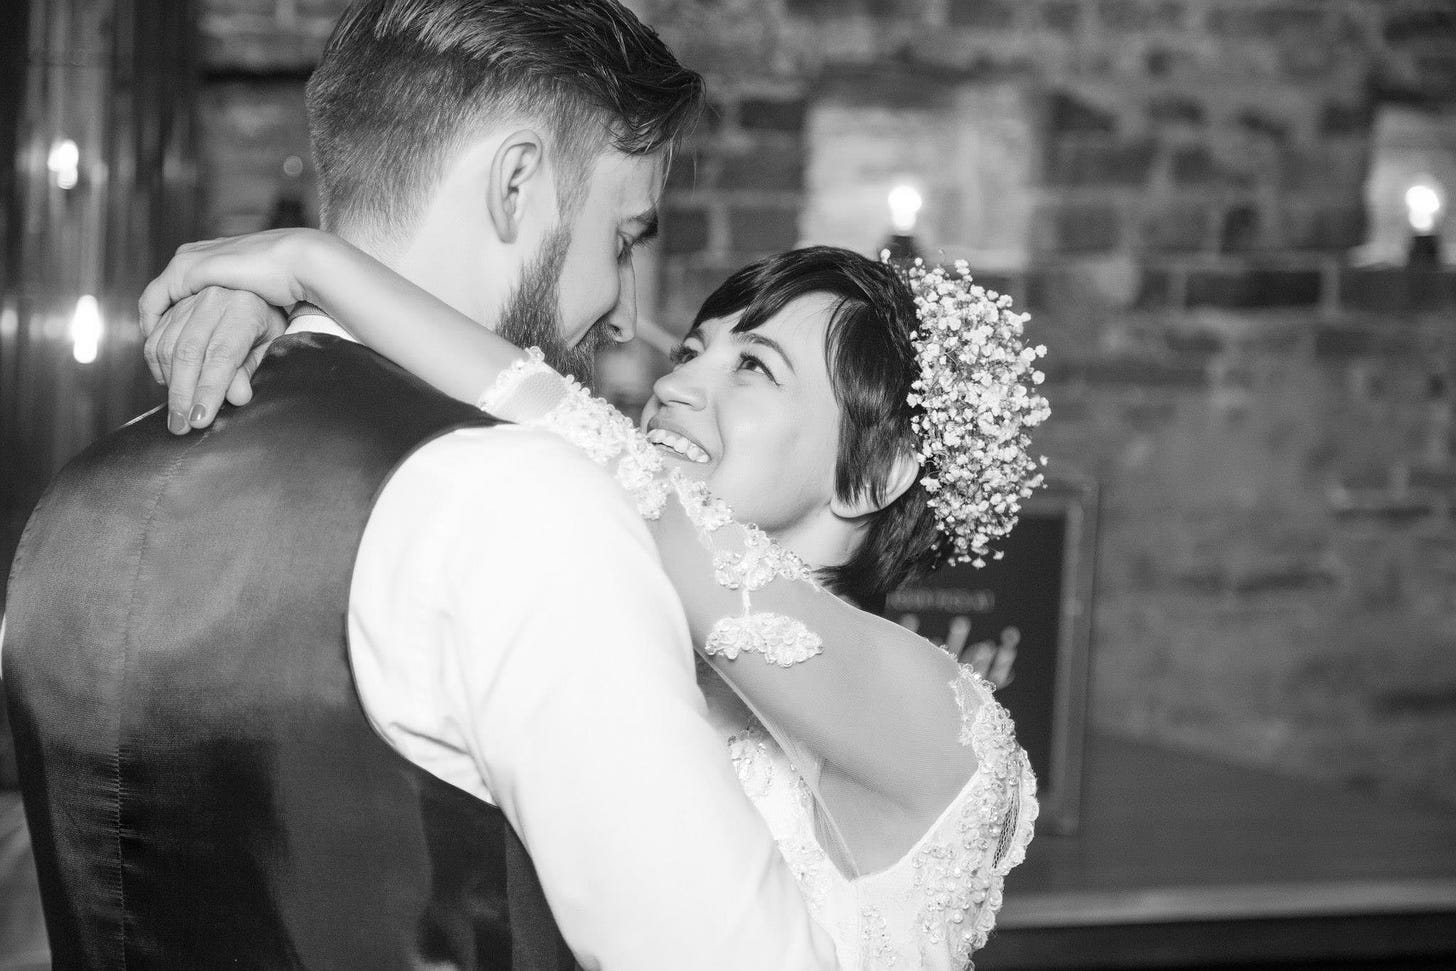 Imagem preta e branco: Casal vestidos de noivos abraçados se olhando. Os dois estão sorrindo. Ela tem cabelo curto e um casquete de flores na cabeça. 